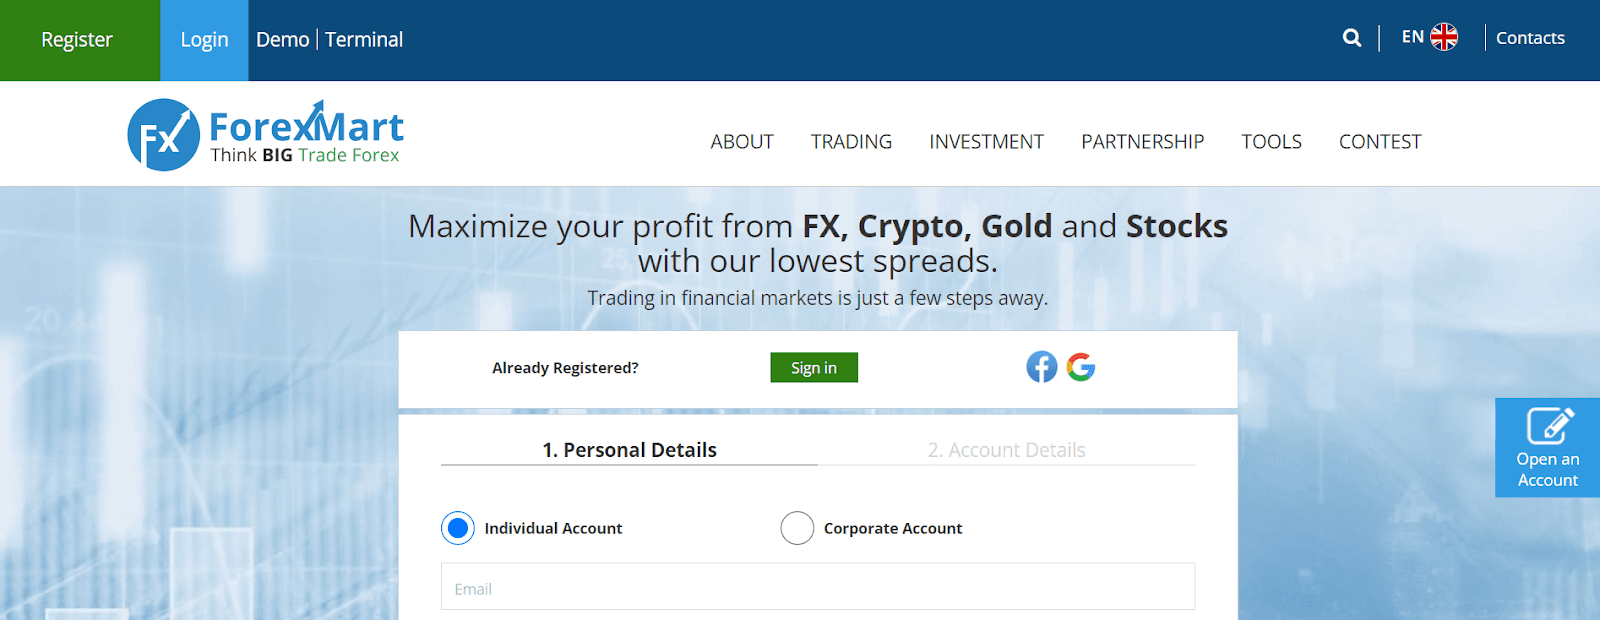 ForexMart की समीक्षा करें - एक ट्रेडिंग खाता खोलना